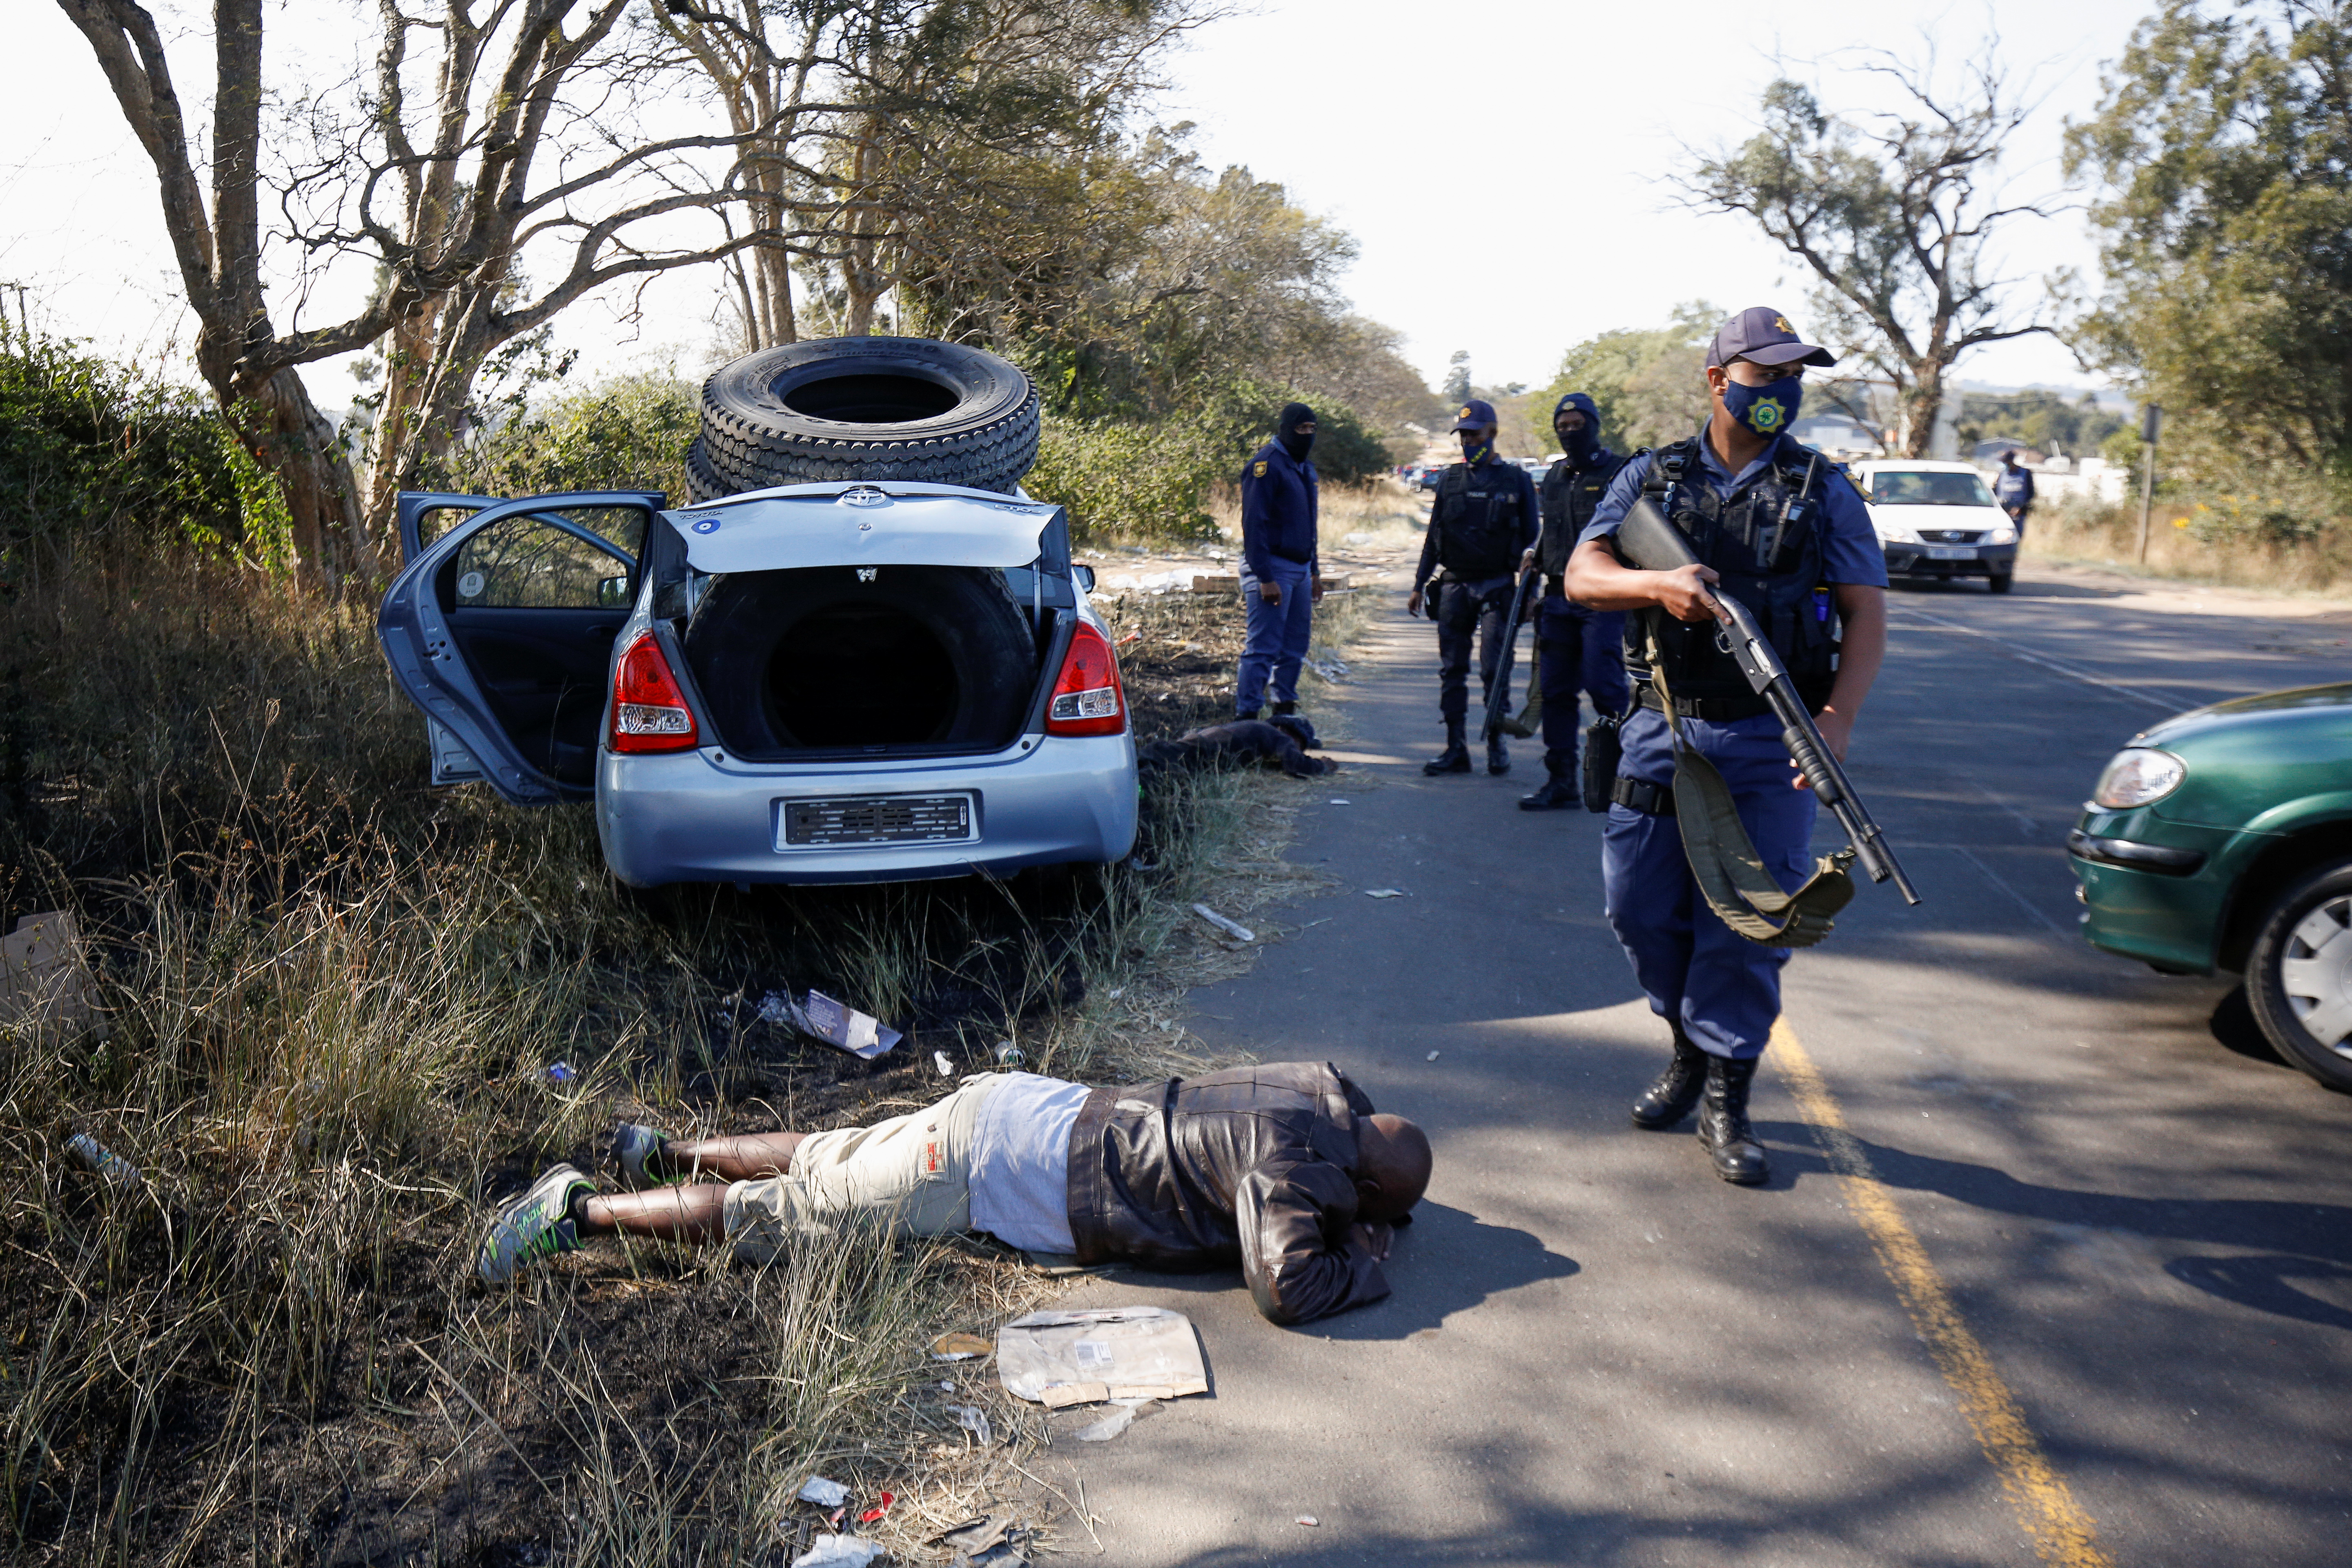 Agentes de policía detienen a personas después de que estallara la violencia tras el encarcelamiento del ex presidente sudafricano Jacob Zuma, en Cato Ridge, el 14 de julio de 2021 (REUTERS/Rogan Ward)